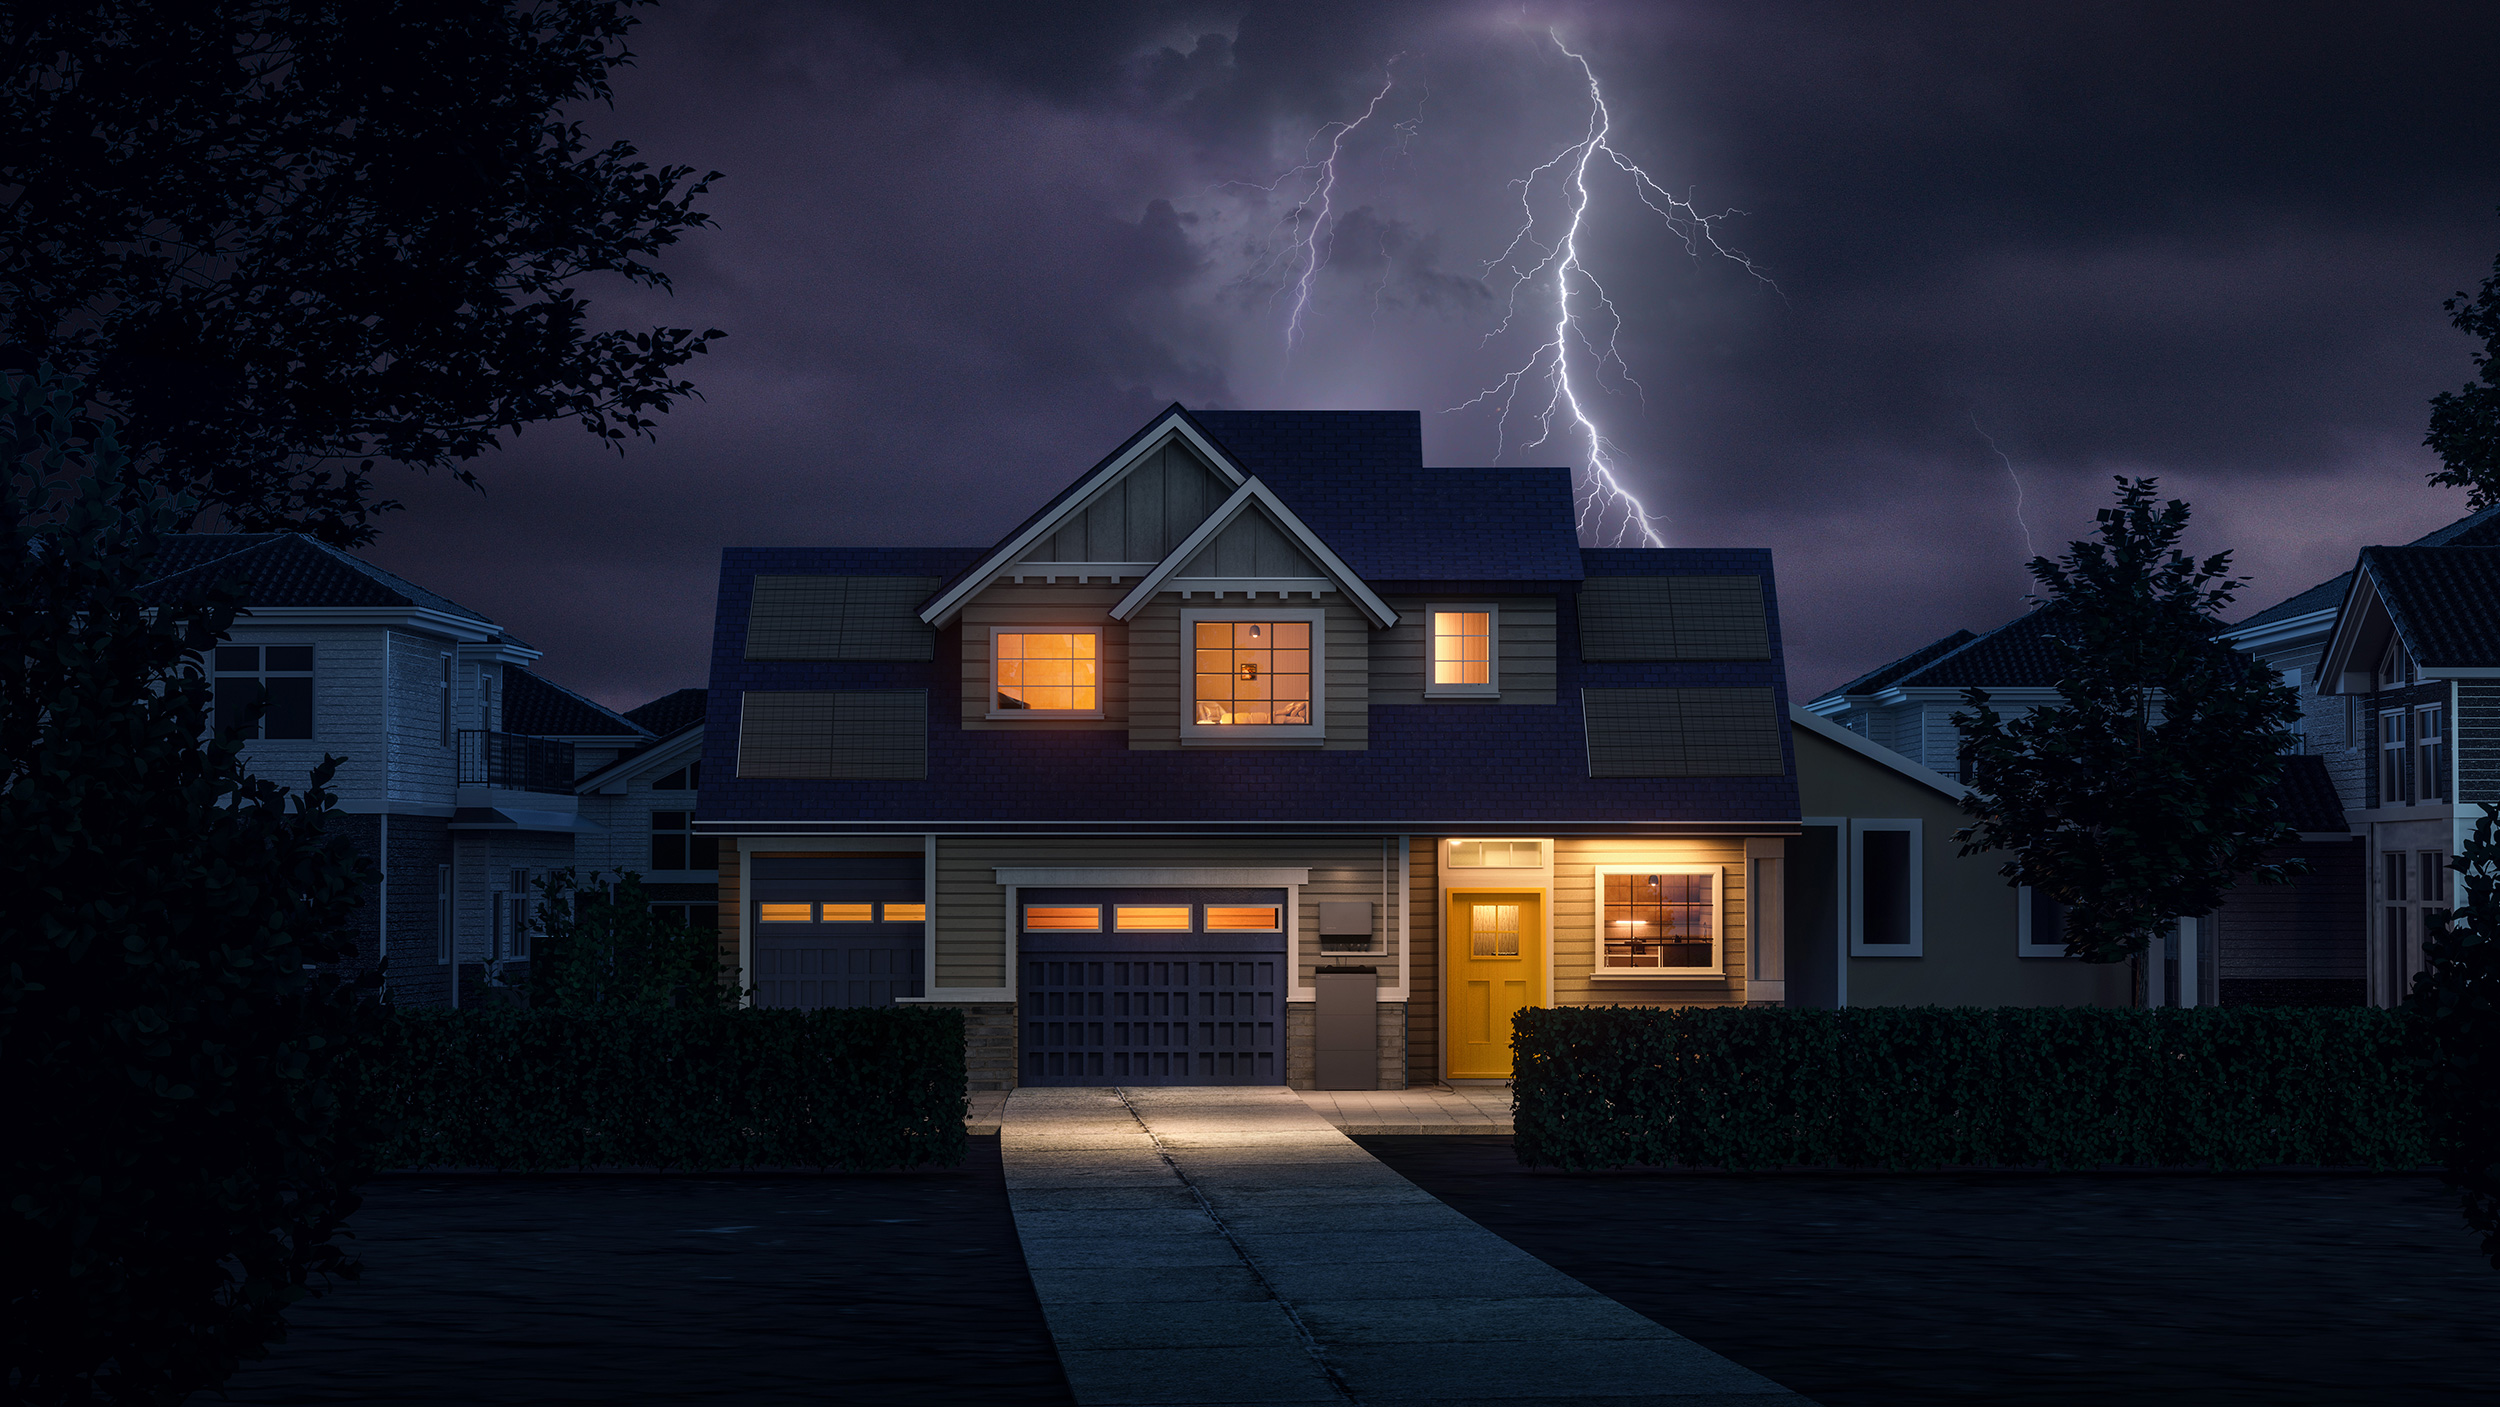 Einfamilienhaus mit Vorgarten beleuchteten Fenstern, PowerOcean Solarbatterielösung vor der Haustüre im Dunkeln bei Gewitter